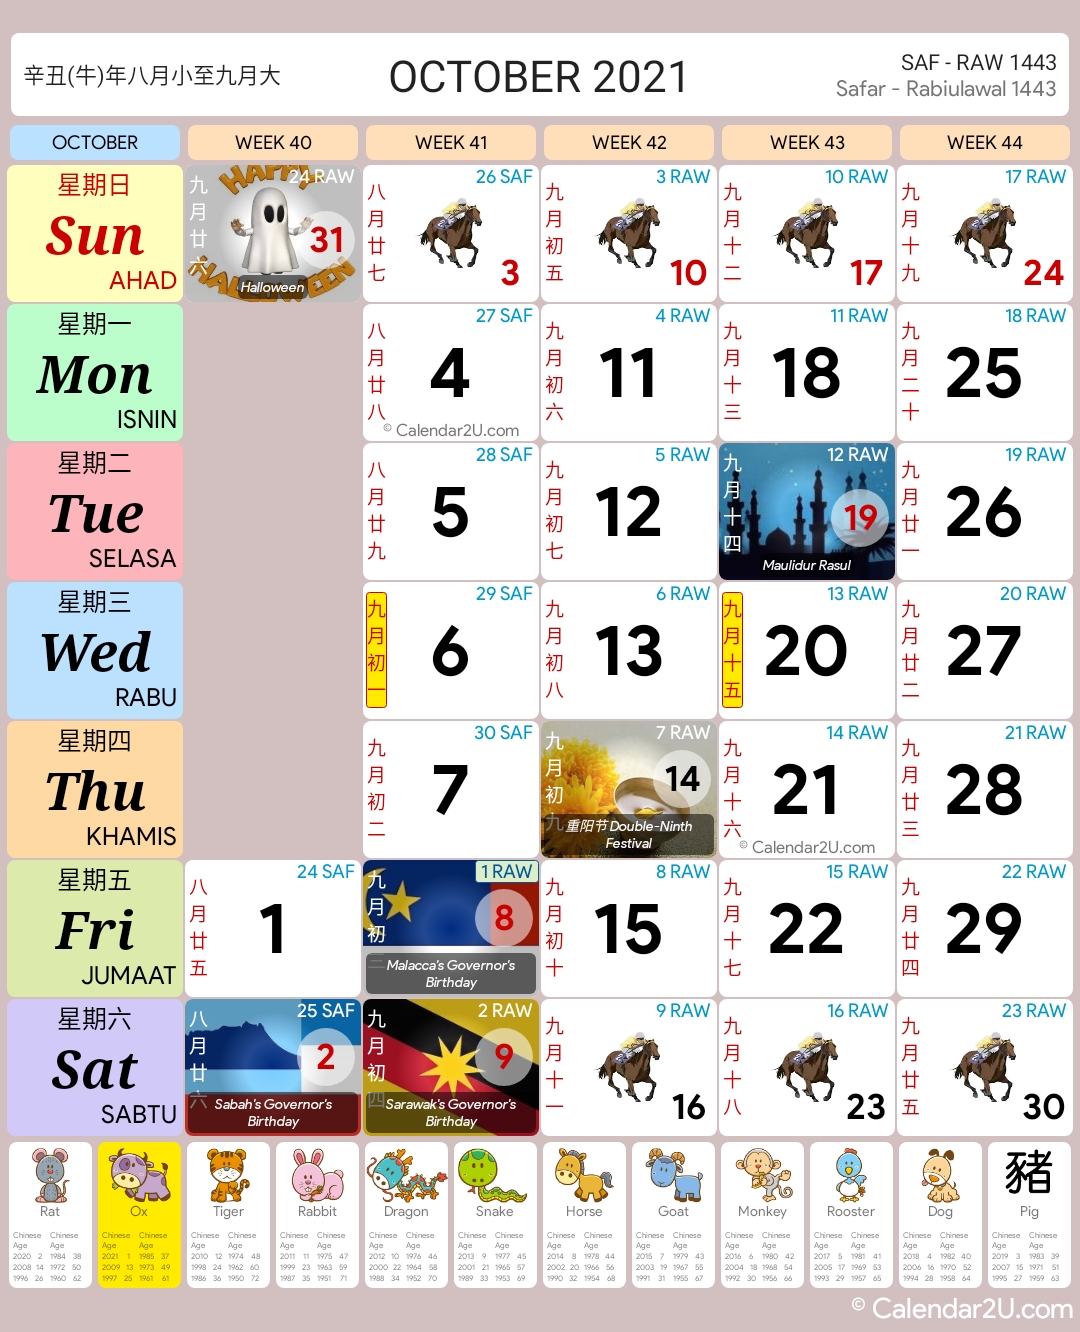 Calendar october 2021 malaysia